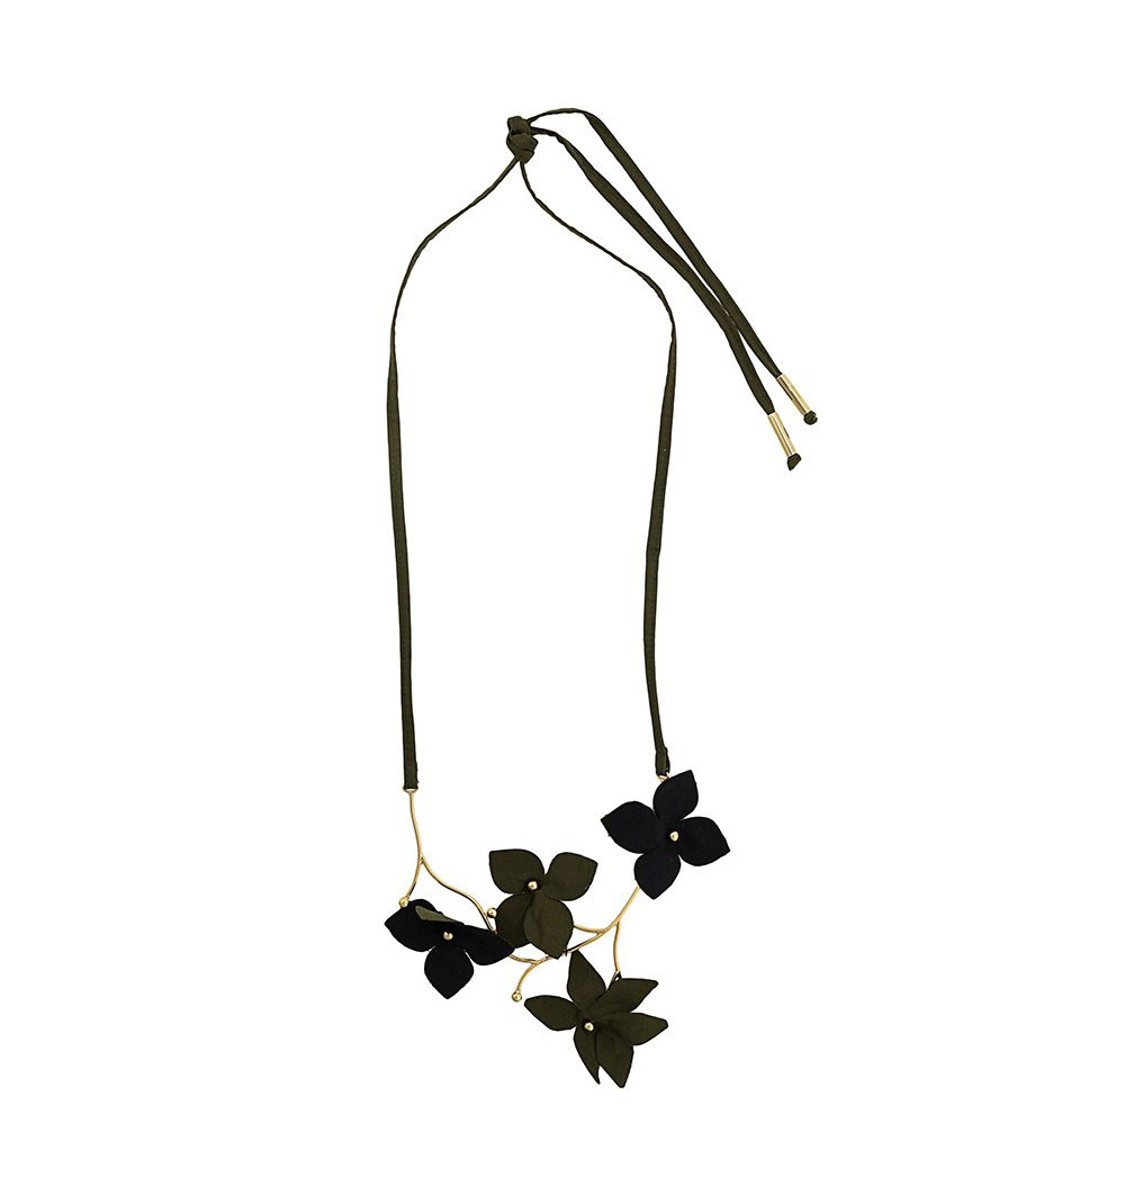 shop Marni Saldi Bijoux: Bijoux Marni, collana in metallo con fiori in stoffa neri e verdi militare, cordino regolabile.

Composizione: 80% ottone, 20% cotone. number 1646